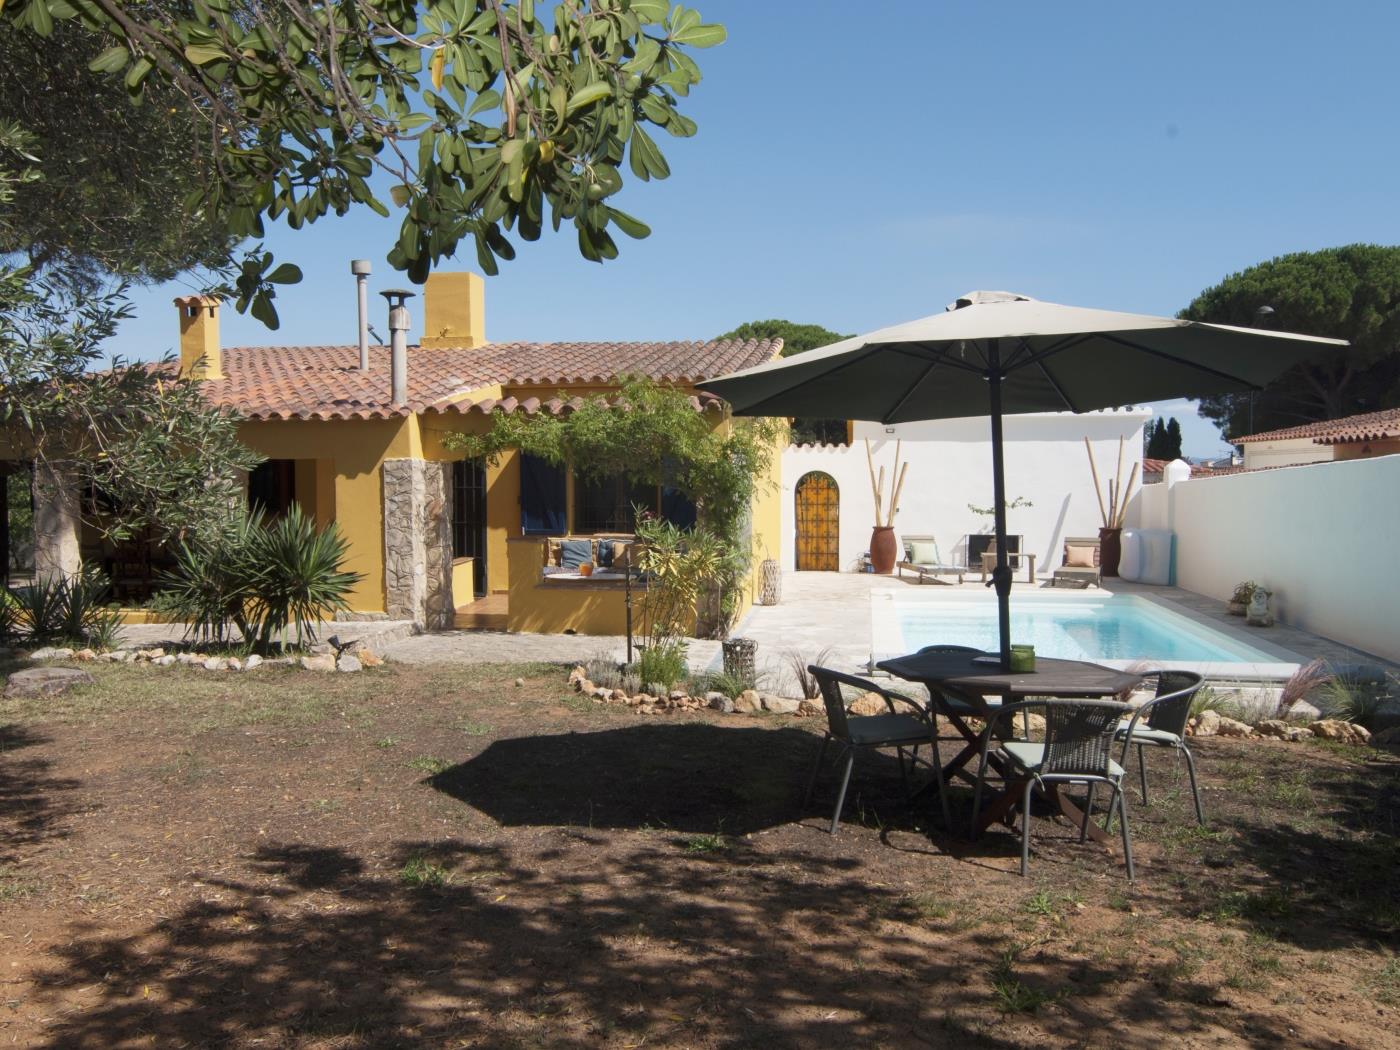 Casa con personalidad, gran jardín con diferentes espacios piscina priv. y wifi. en l'Escala